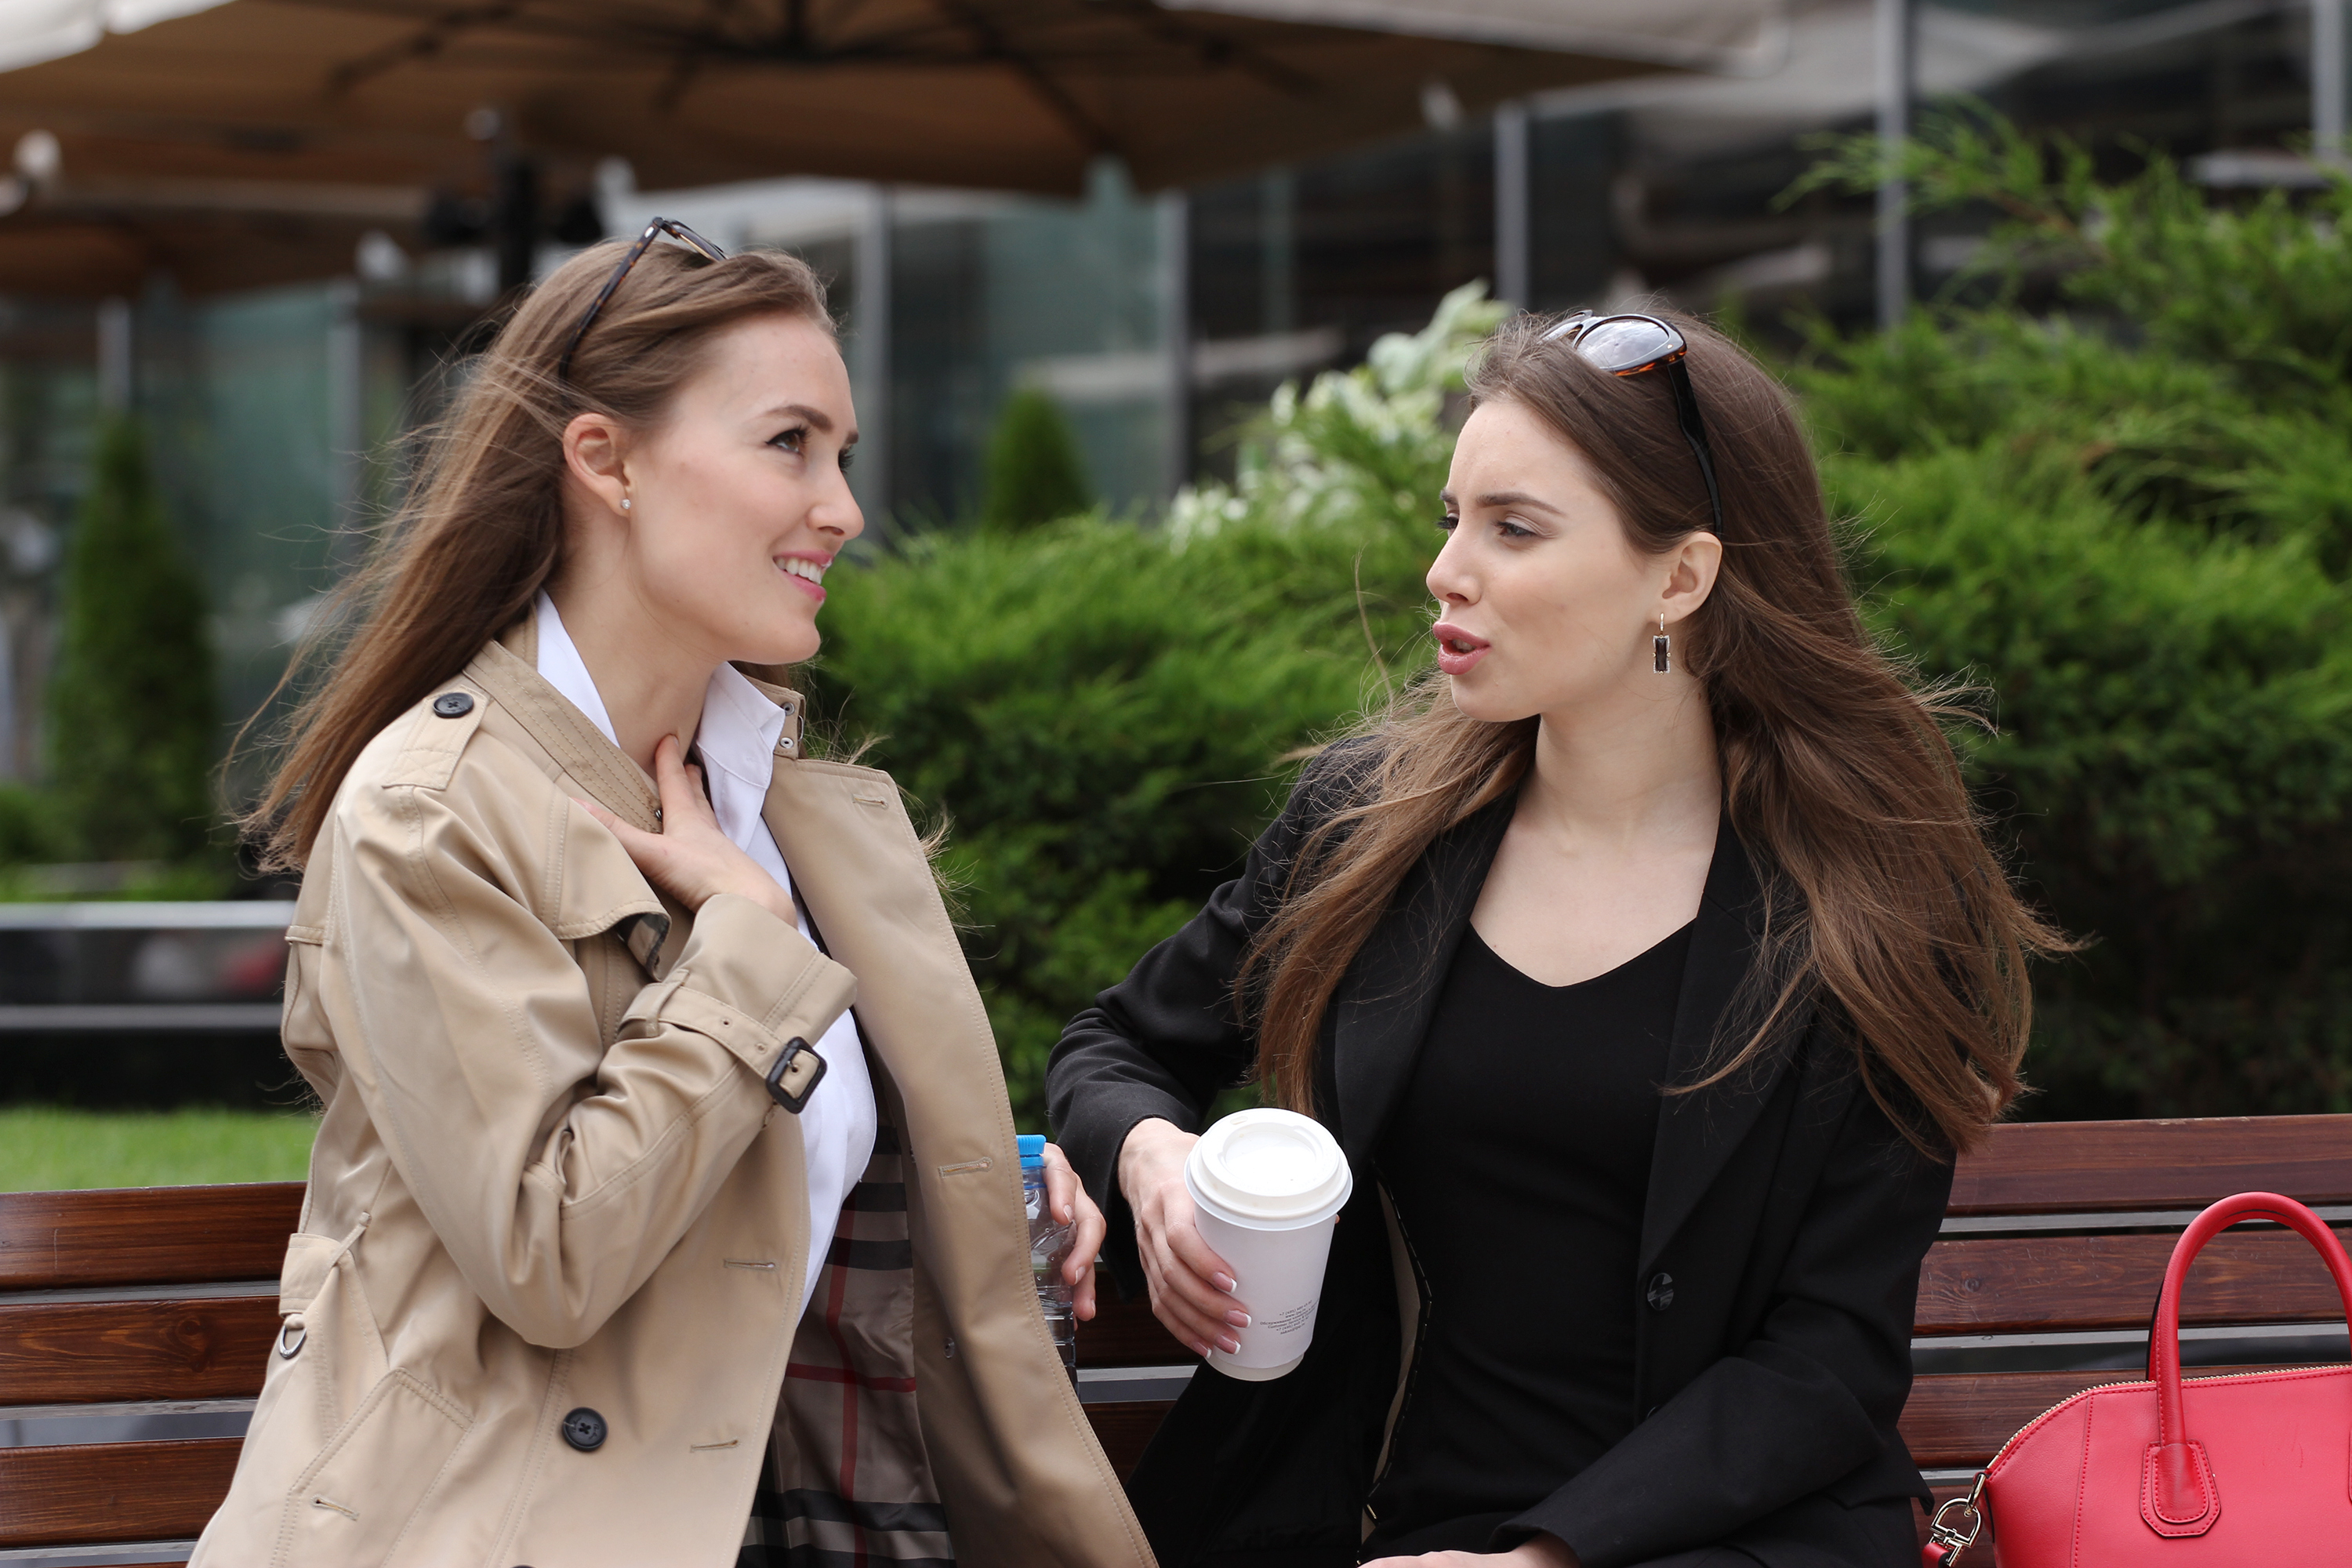 Two girls talking | Source: Shutterstock